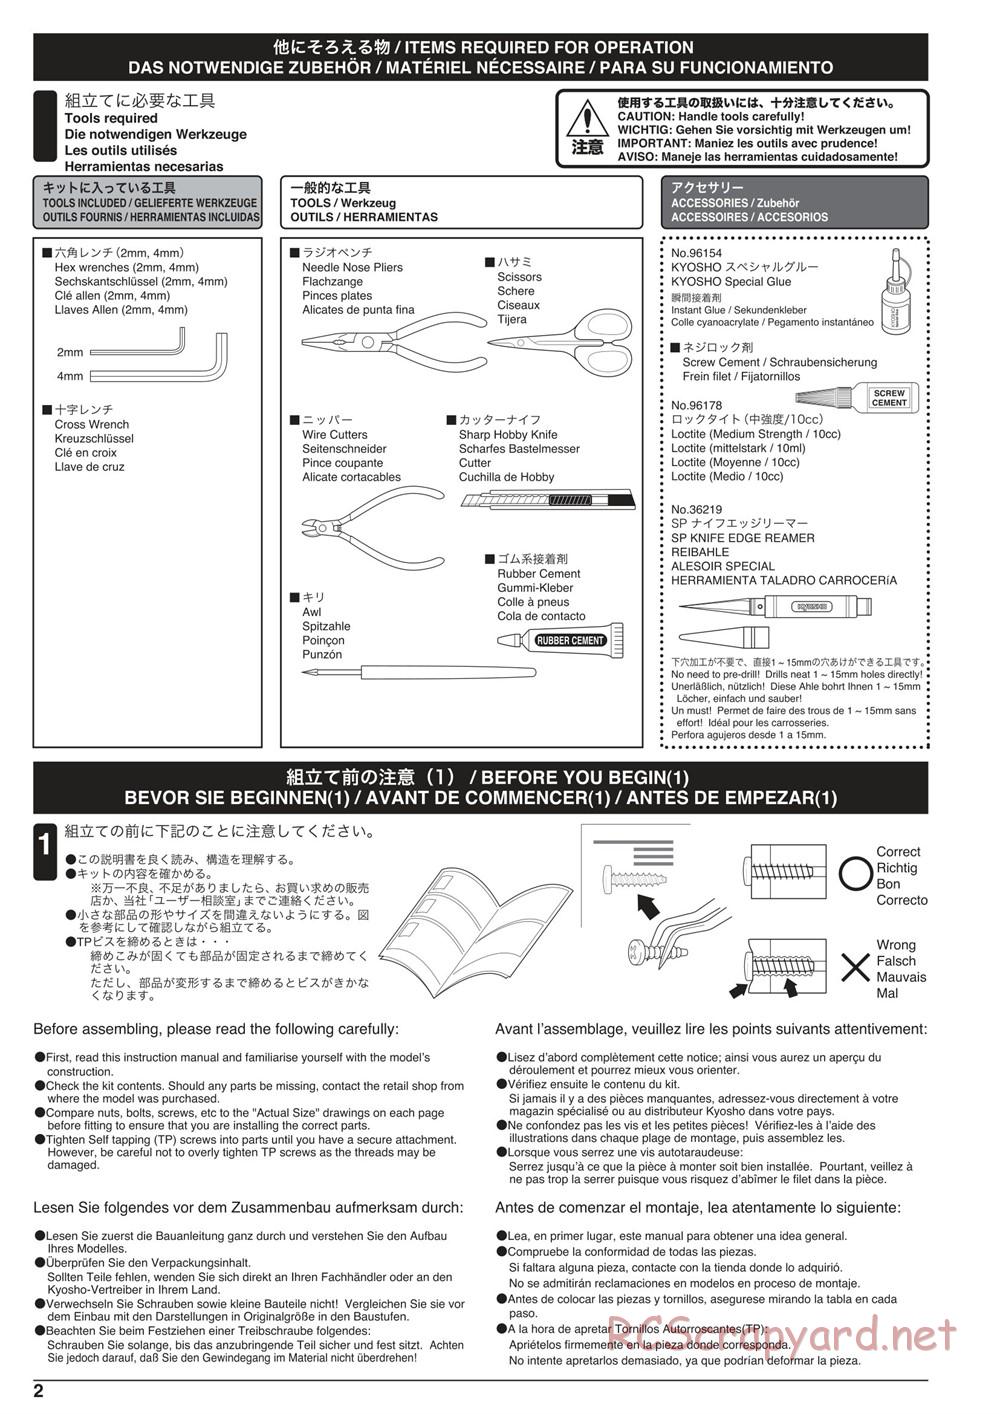 Kyosho - Scorpion XXL VE - Manual - Page 2